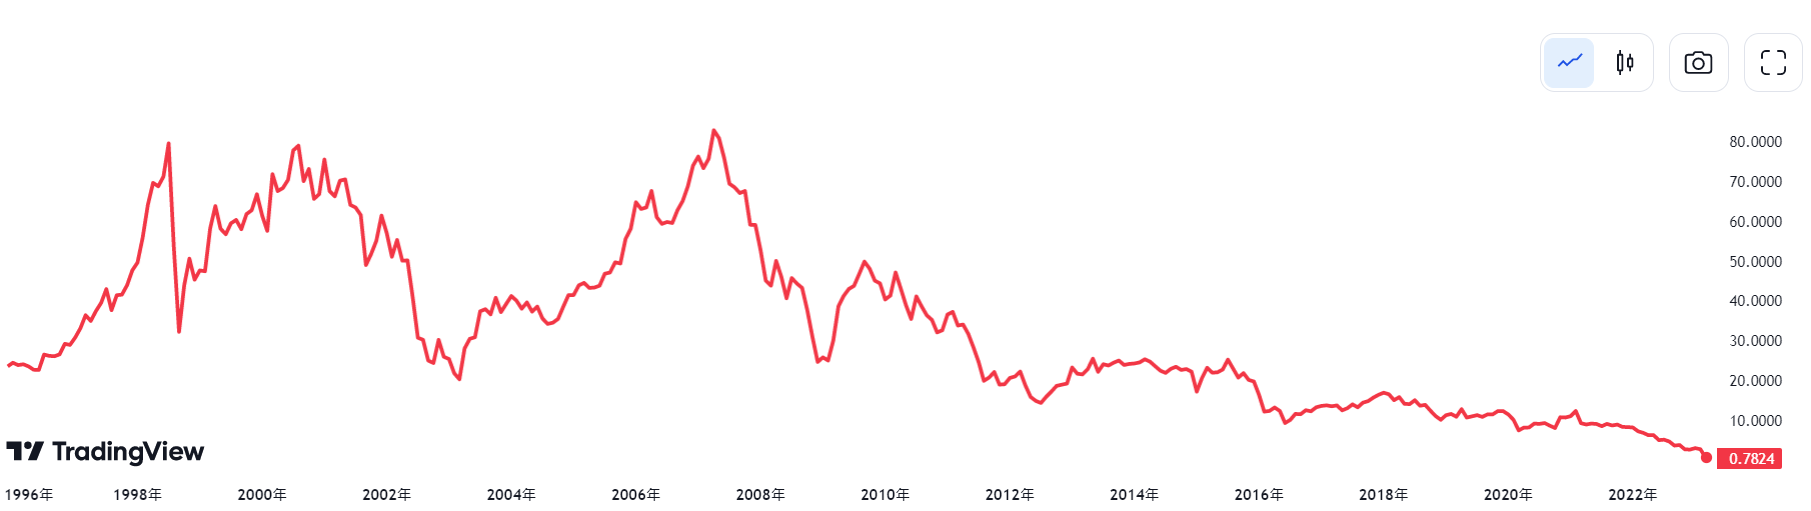 瑞士信貸股價與高點相比滑落99%。